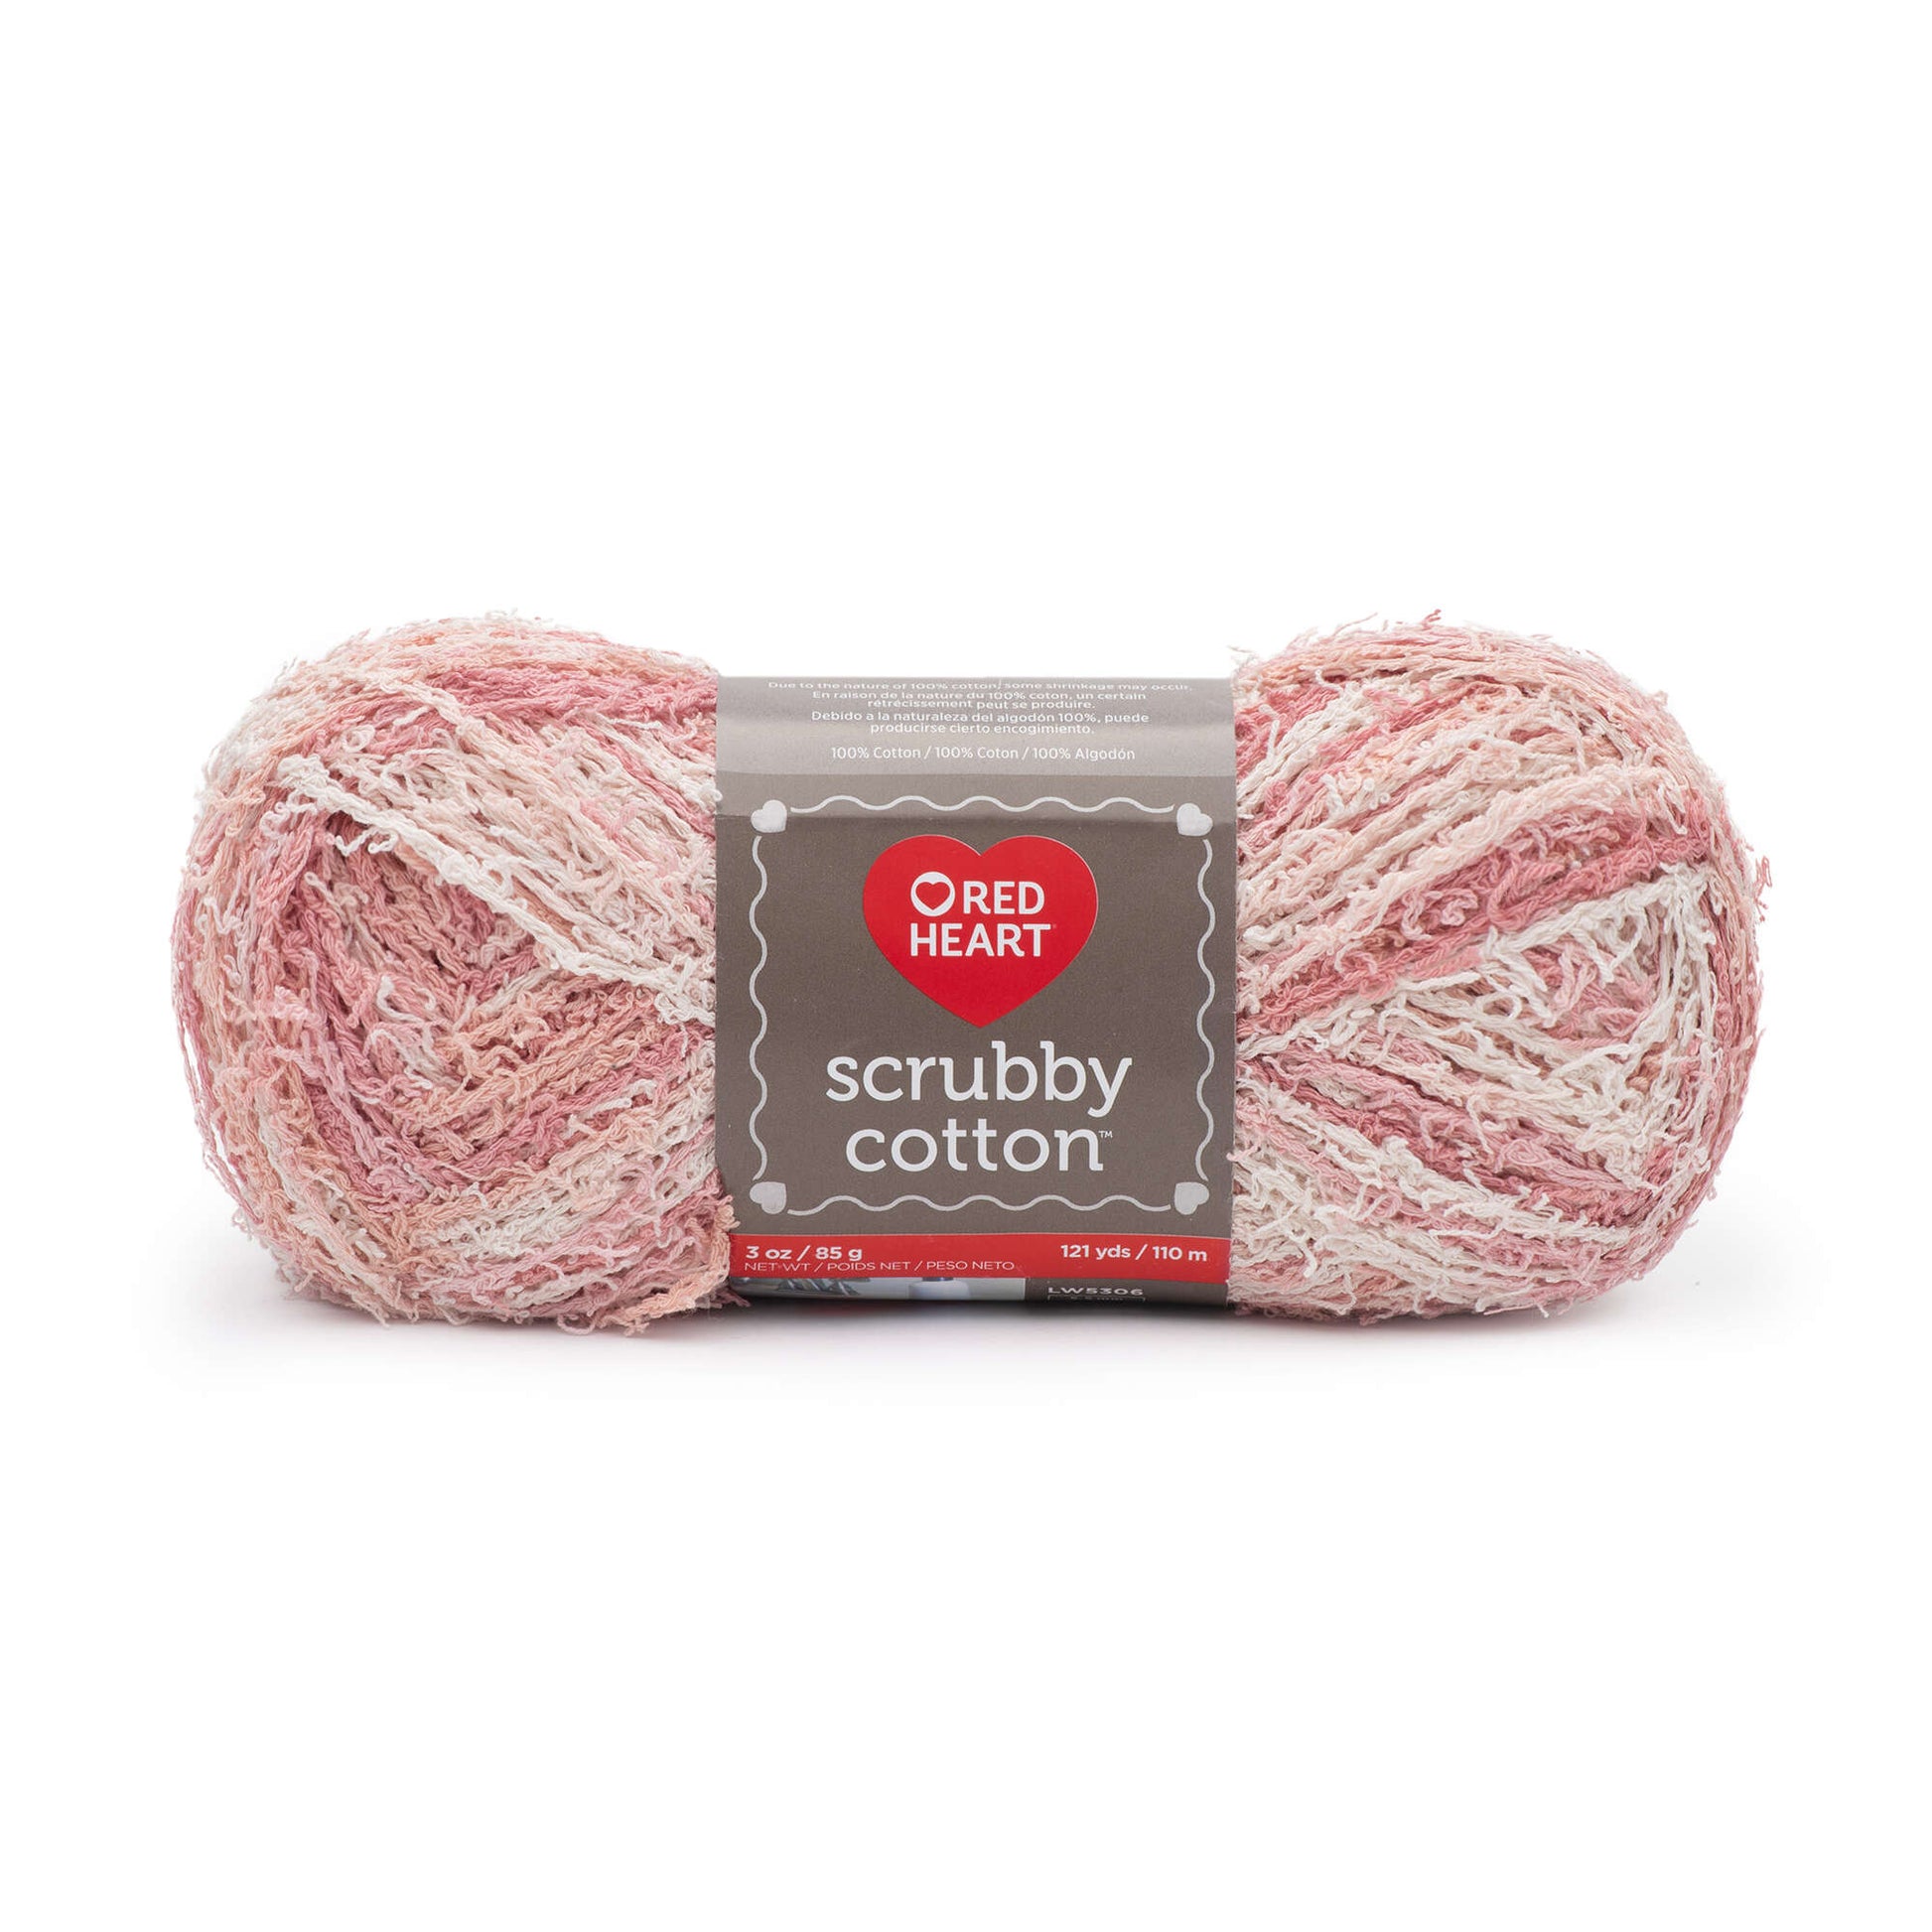  TEHAUX Scrubby Yarn Super Bulky Yarn Cotton Line